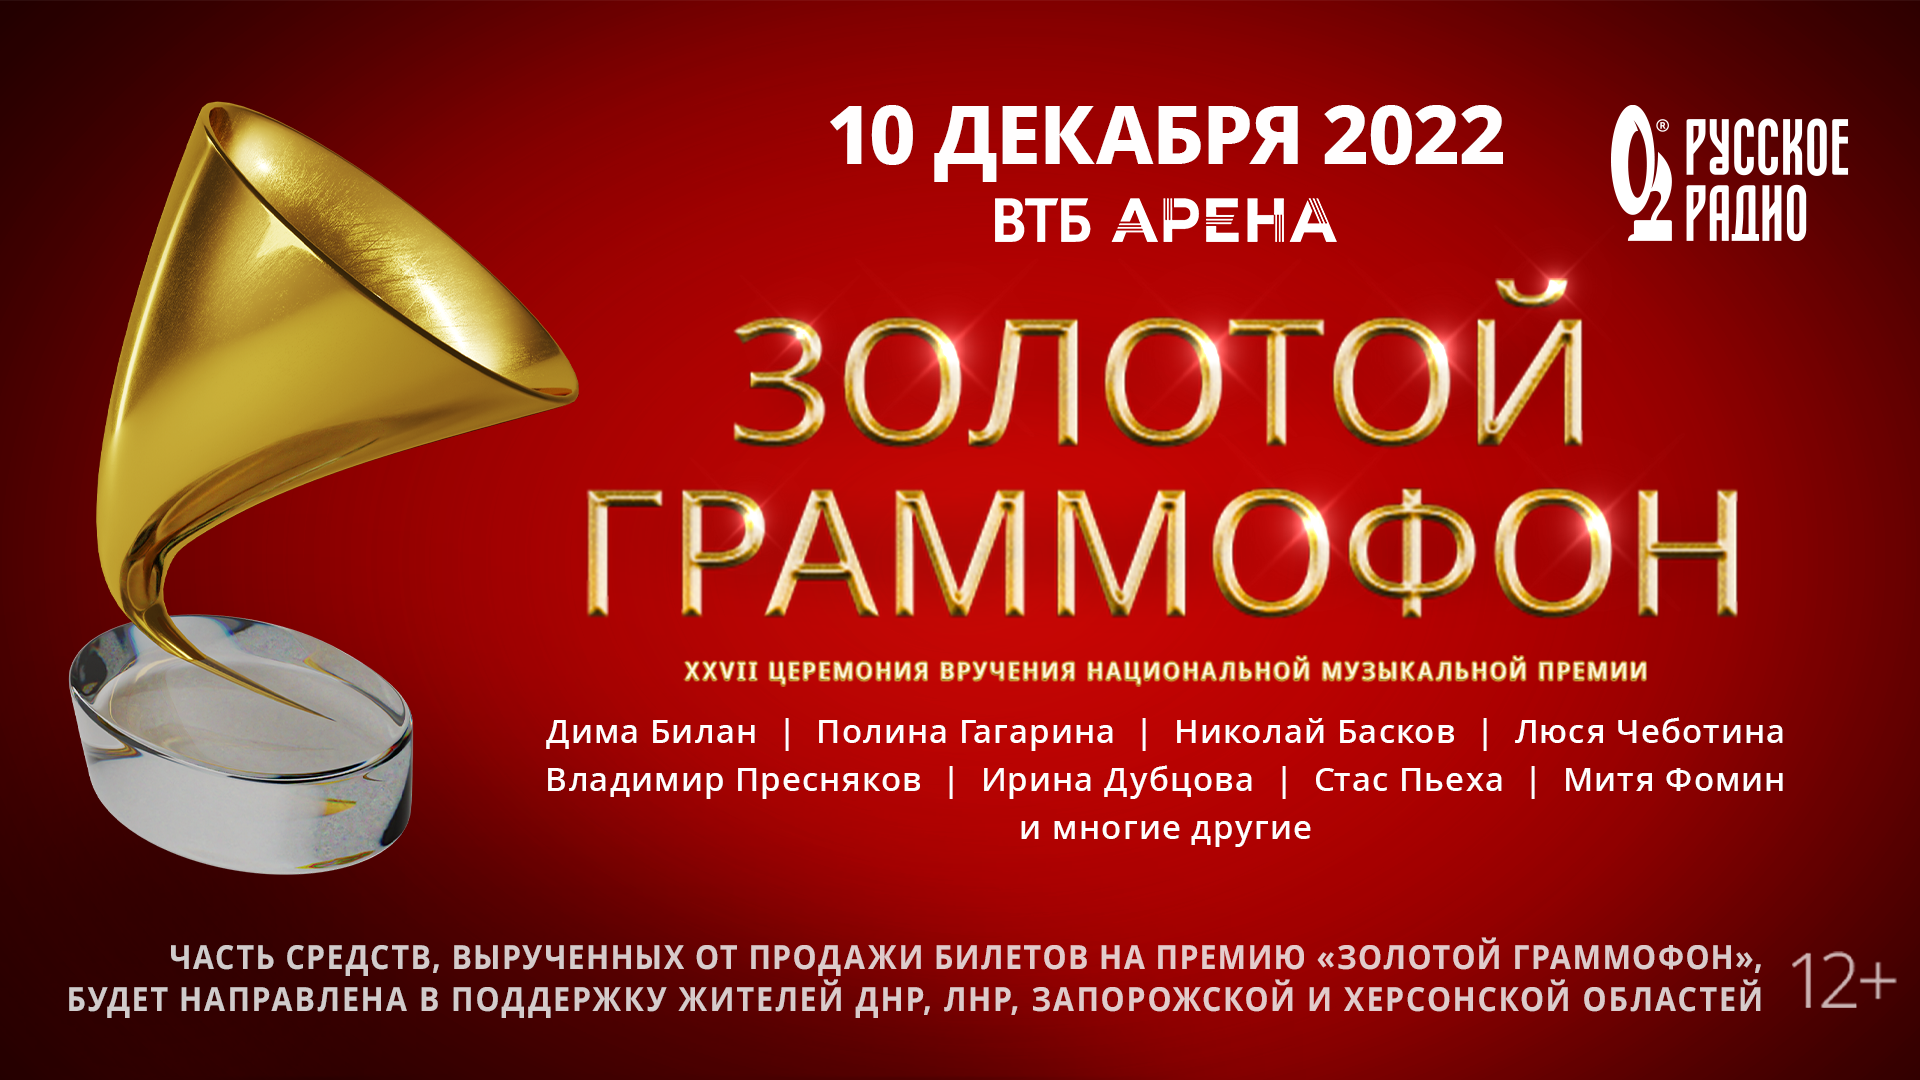 Премия золотой граммофон 2022. Гагарина золотой граммофон 2022. Золотой граммофон 2022 Дубцова.